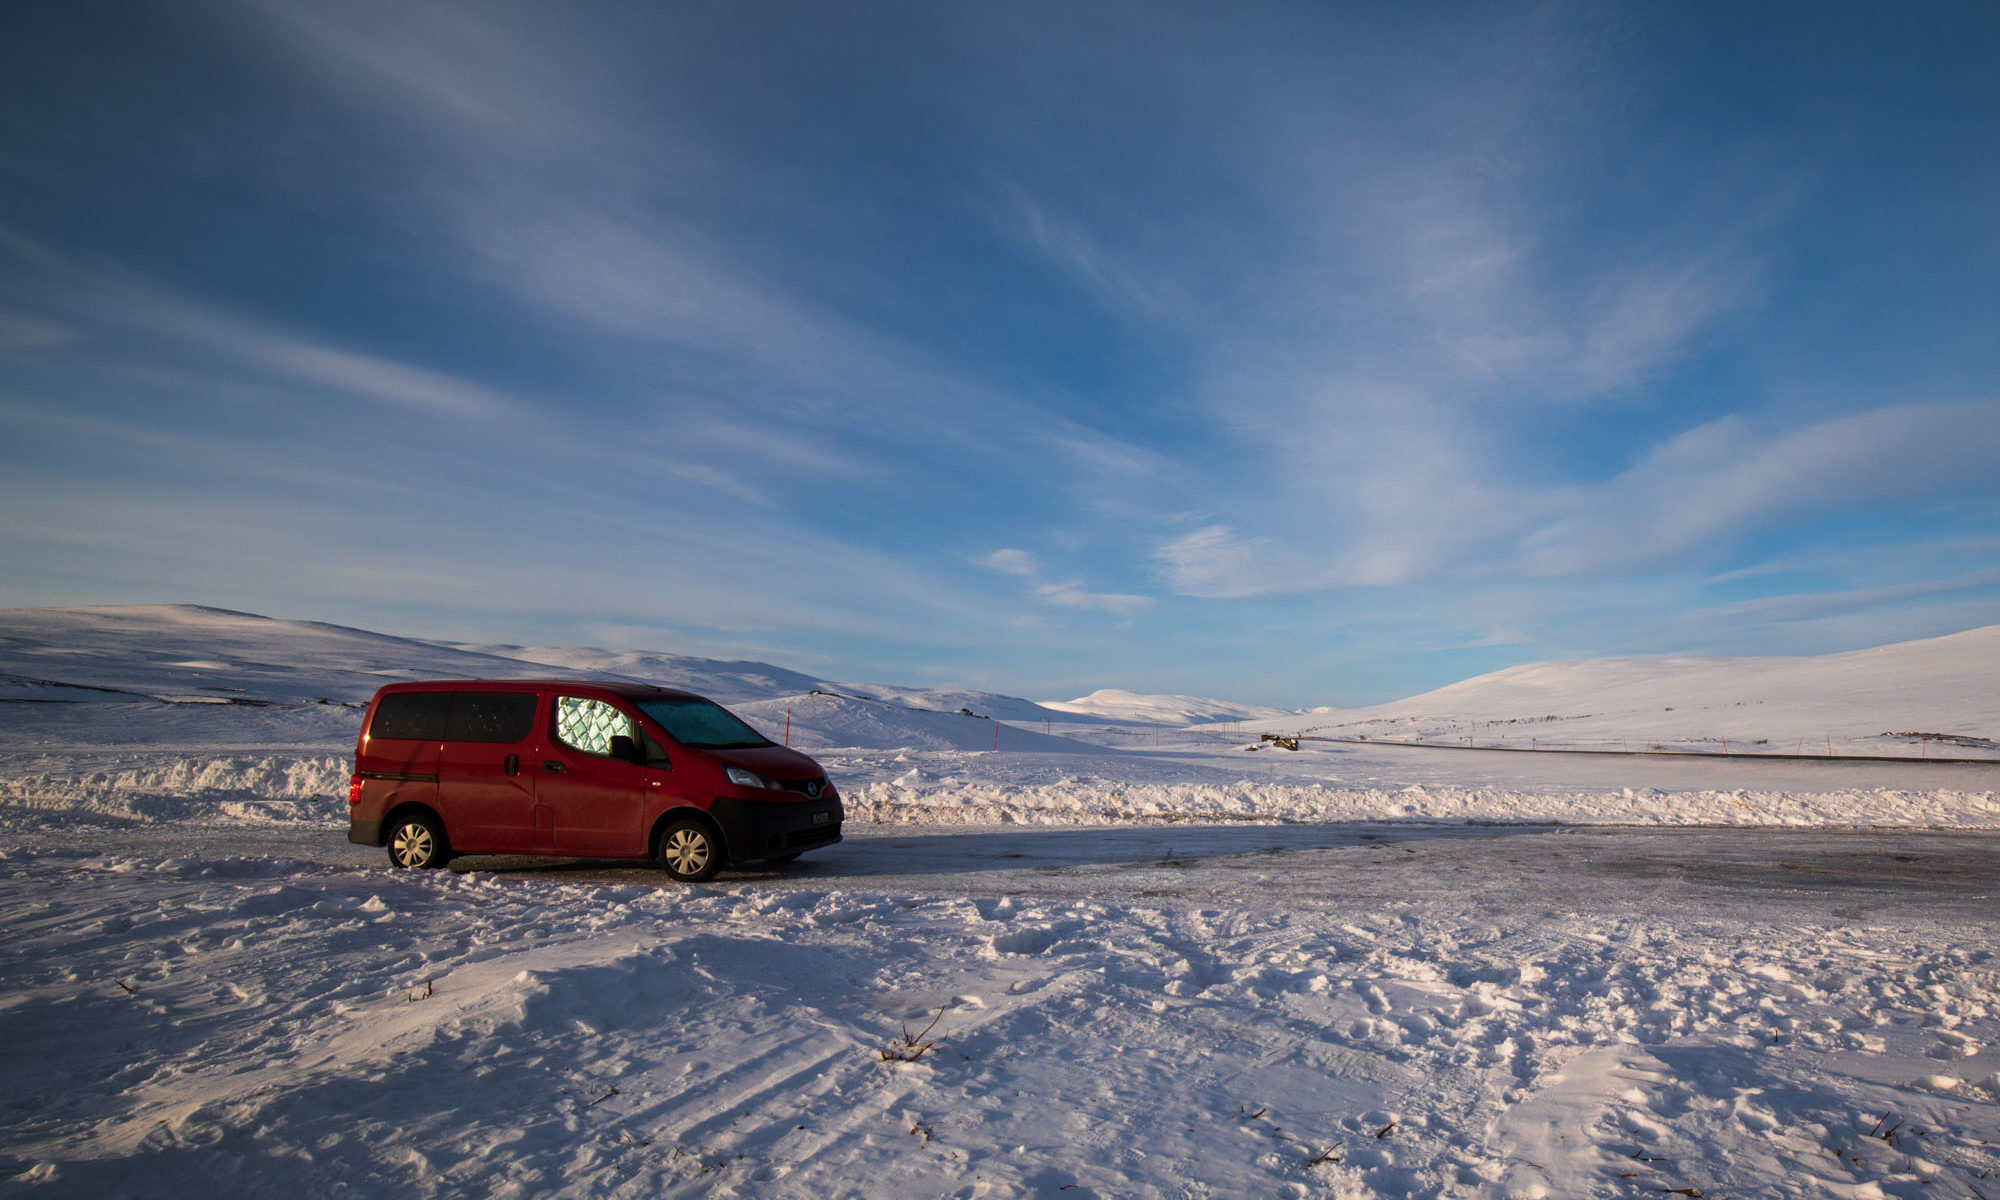 Roter Campervan (Trotti BrumBrum) auf Parkplatz am Polarkreis in Norwegen